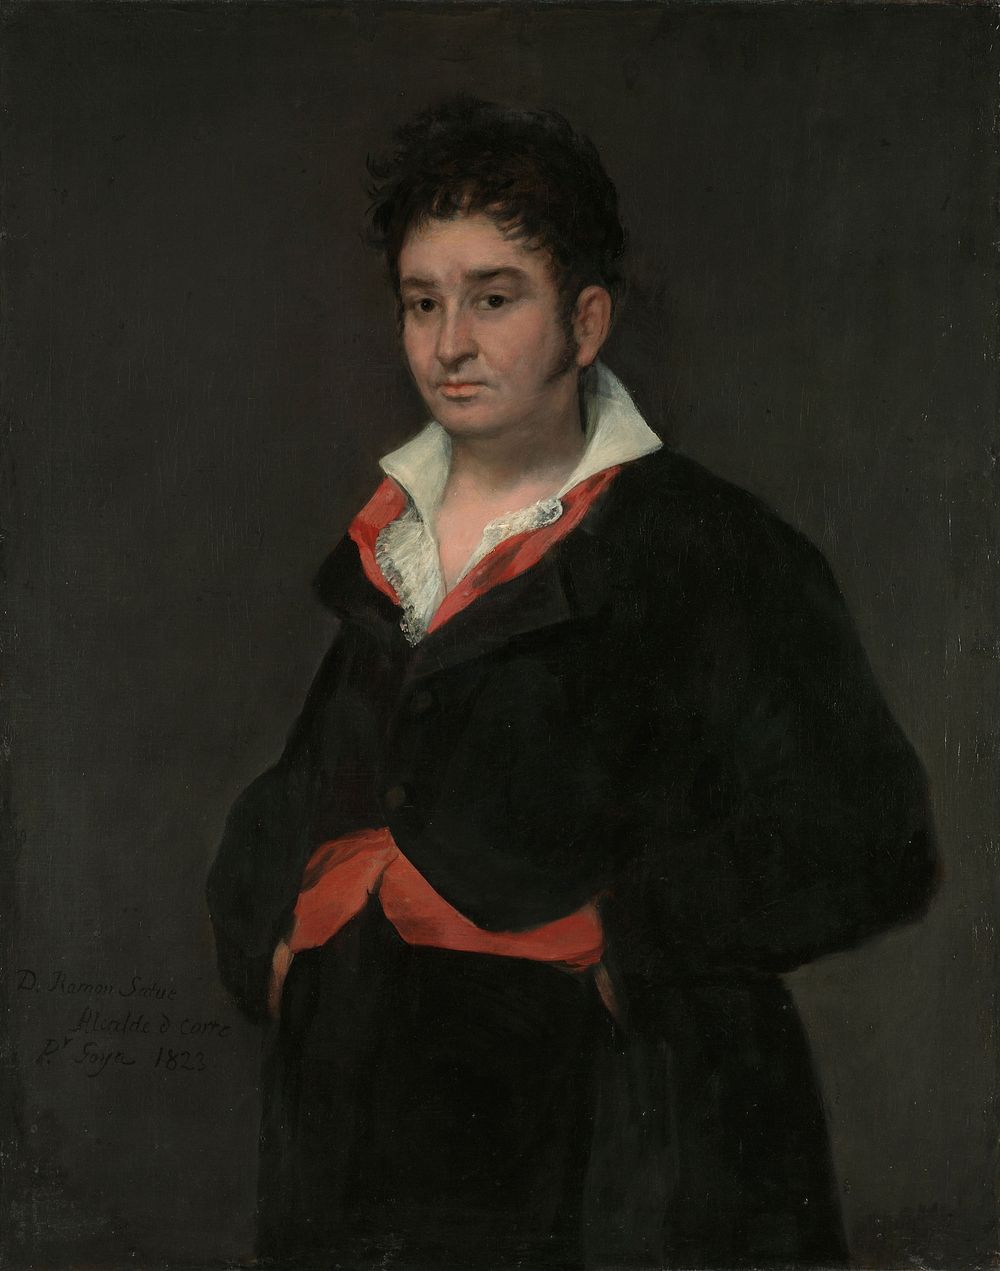 Portrait of Don Ramón Satué (1823) by Francisco de Goya